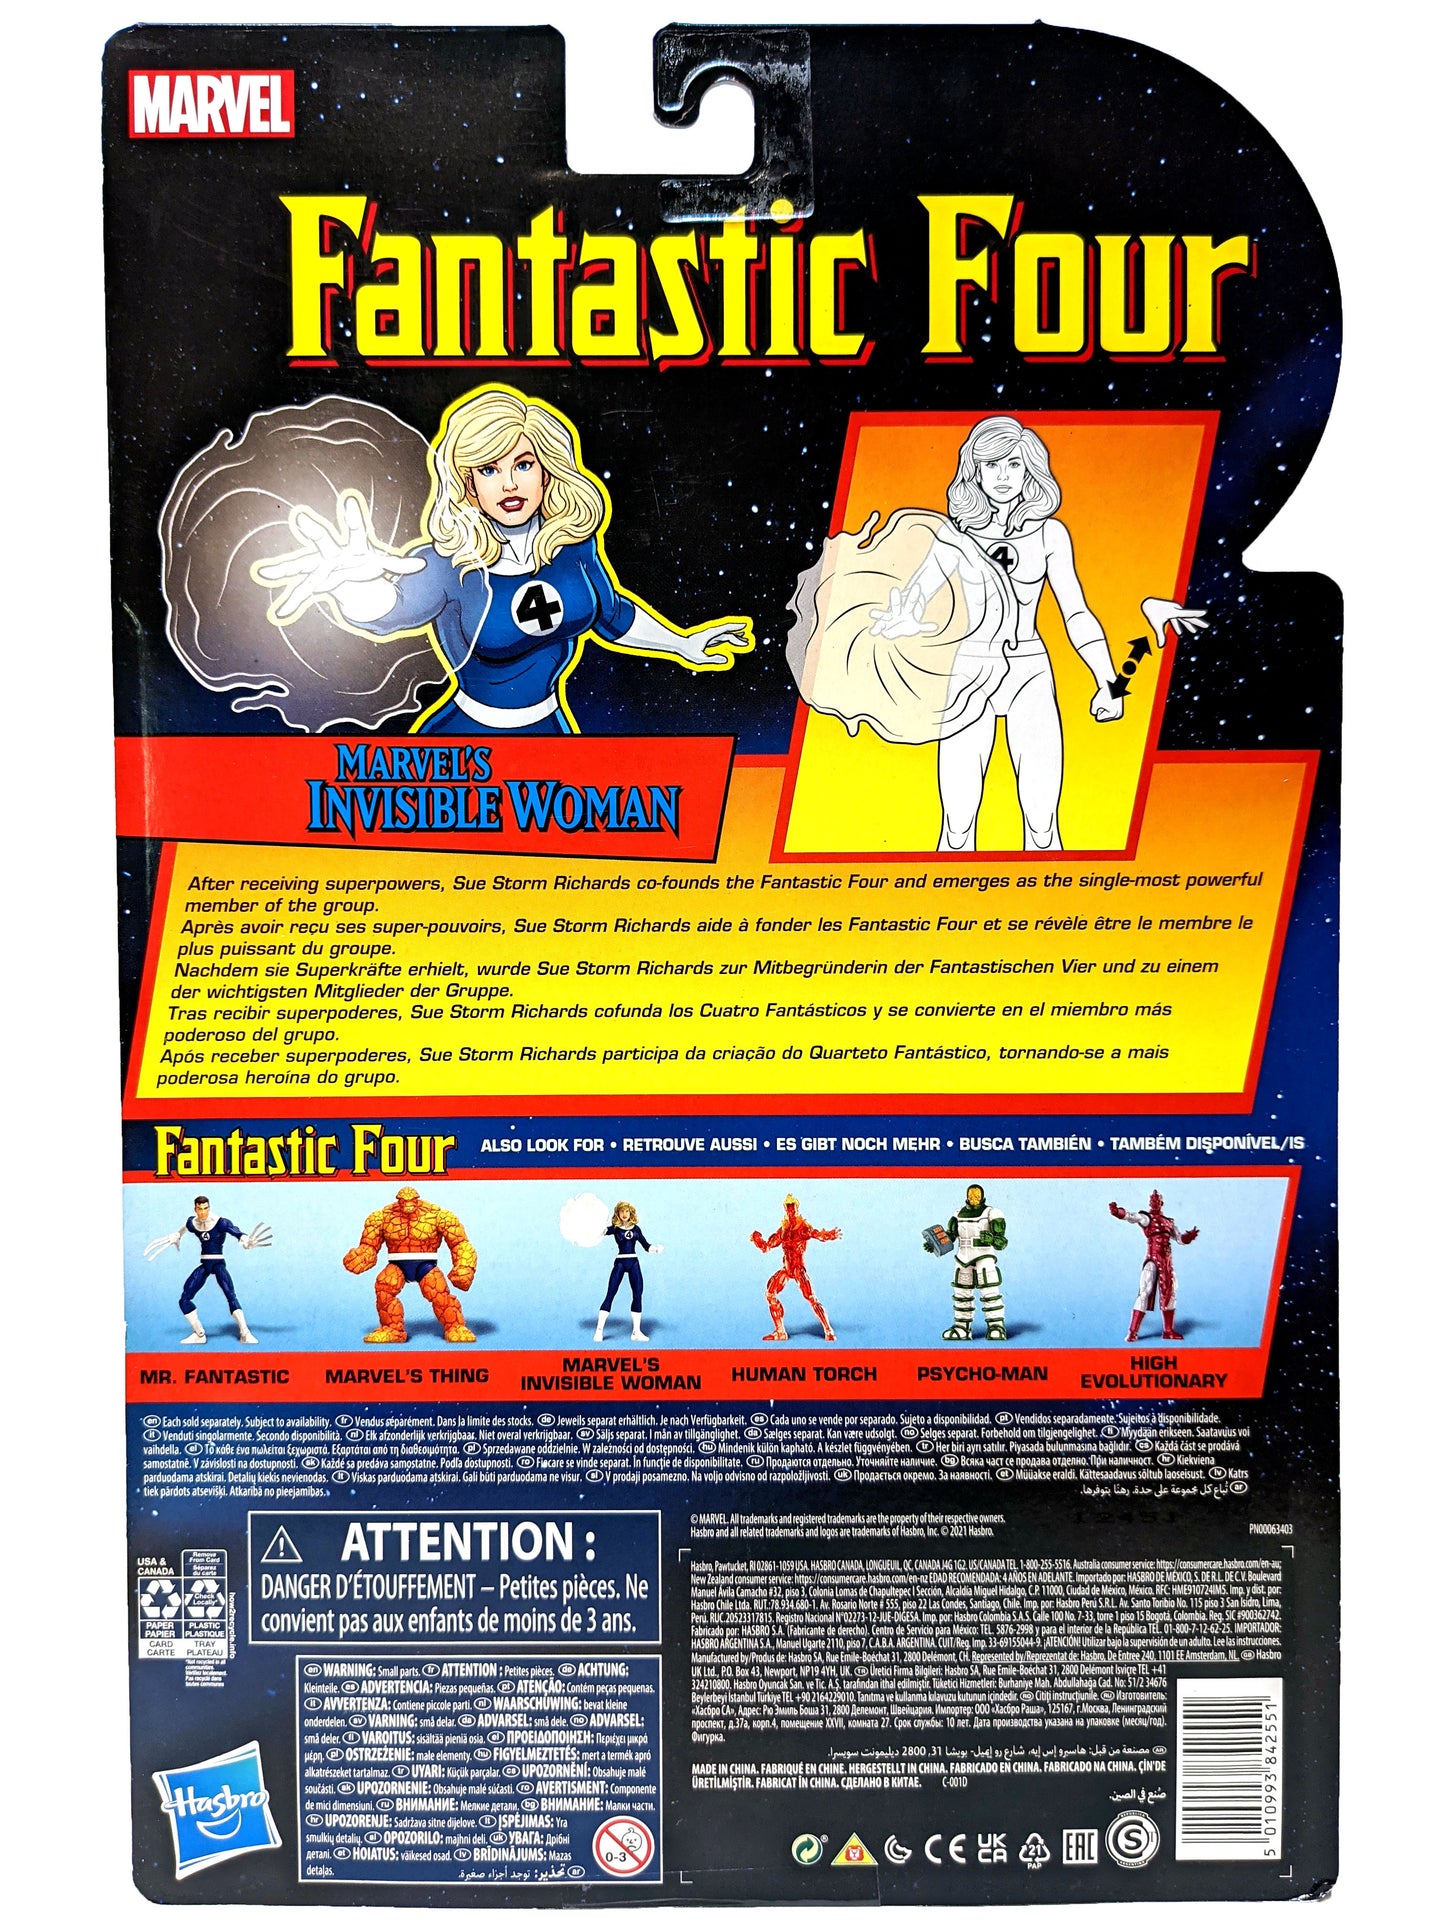 Marvels Comics - Fantastic Four - Marvel's Invincible Woman